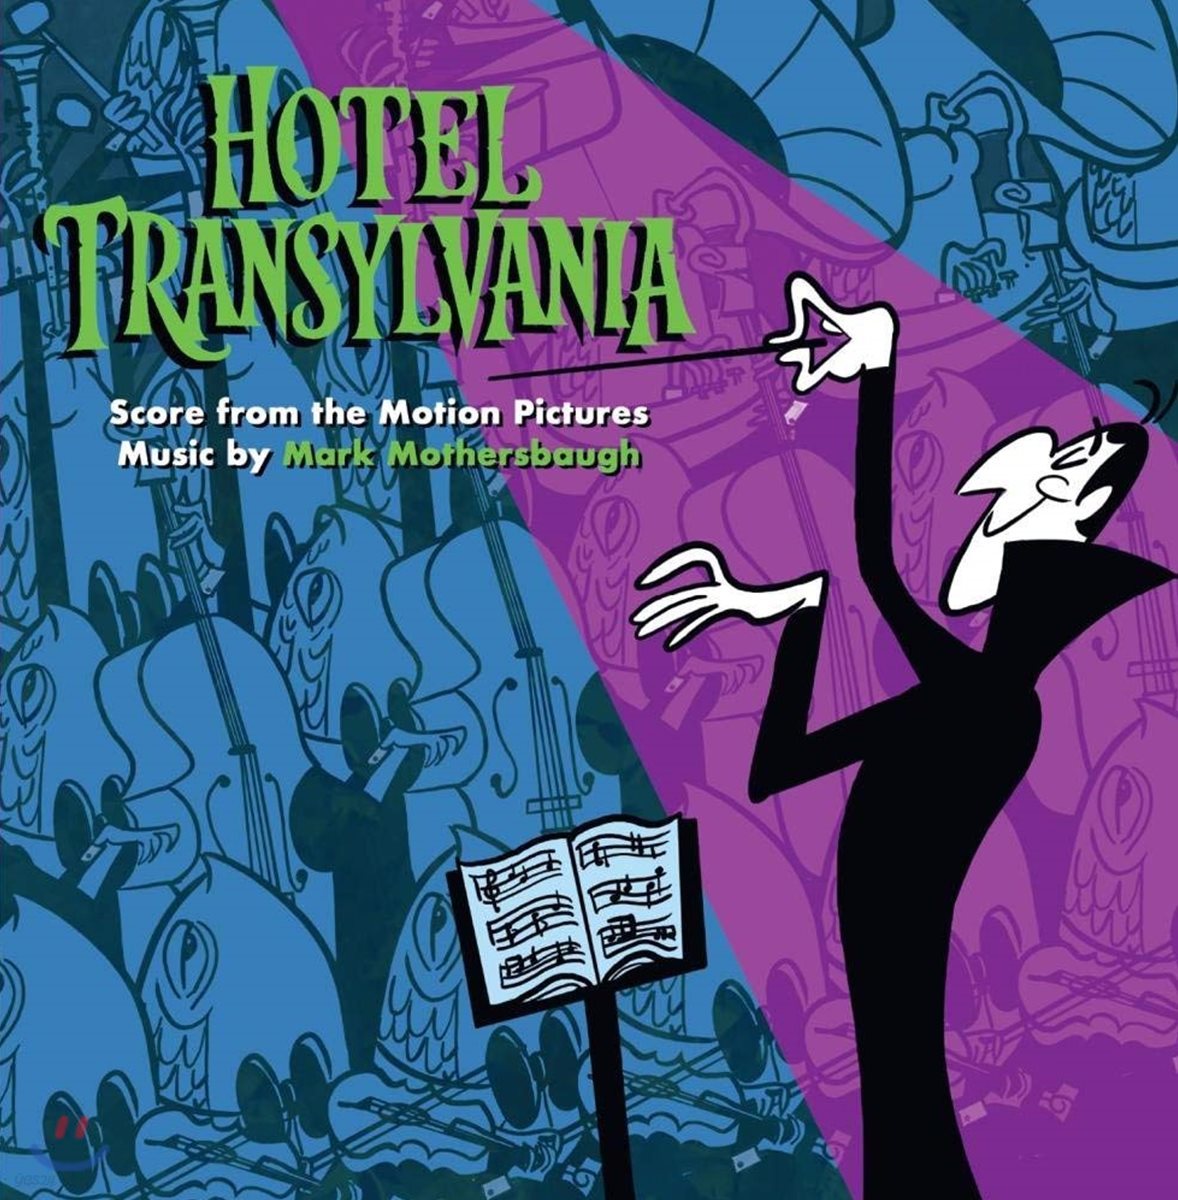 몬스터 호텔 1, 2, 3 영화음악 [스코어] (Hotel Transylvania OST Score From The Motion Pictures)